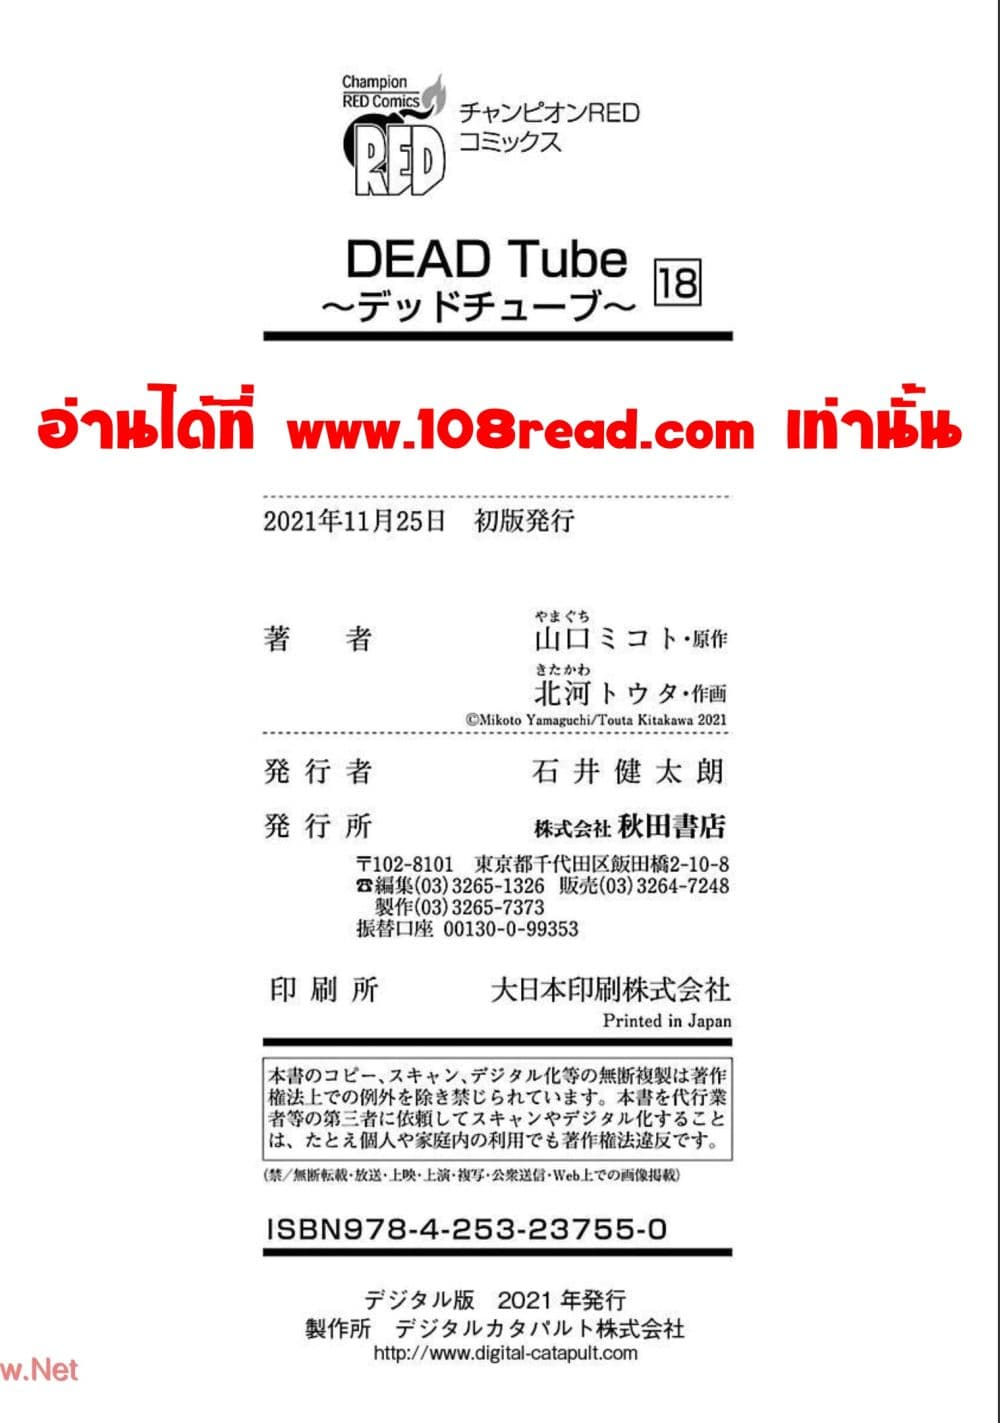 Dead Tube 74 39